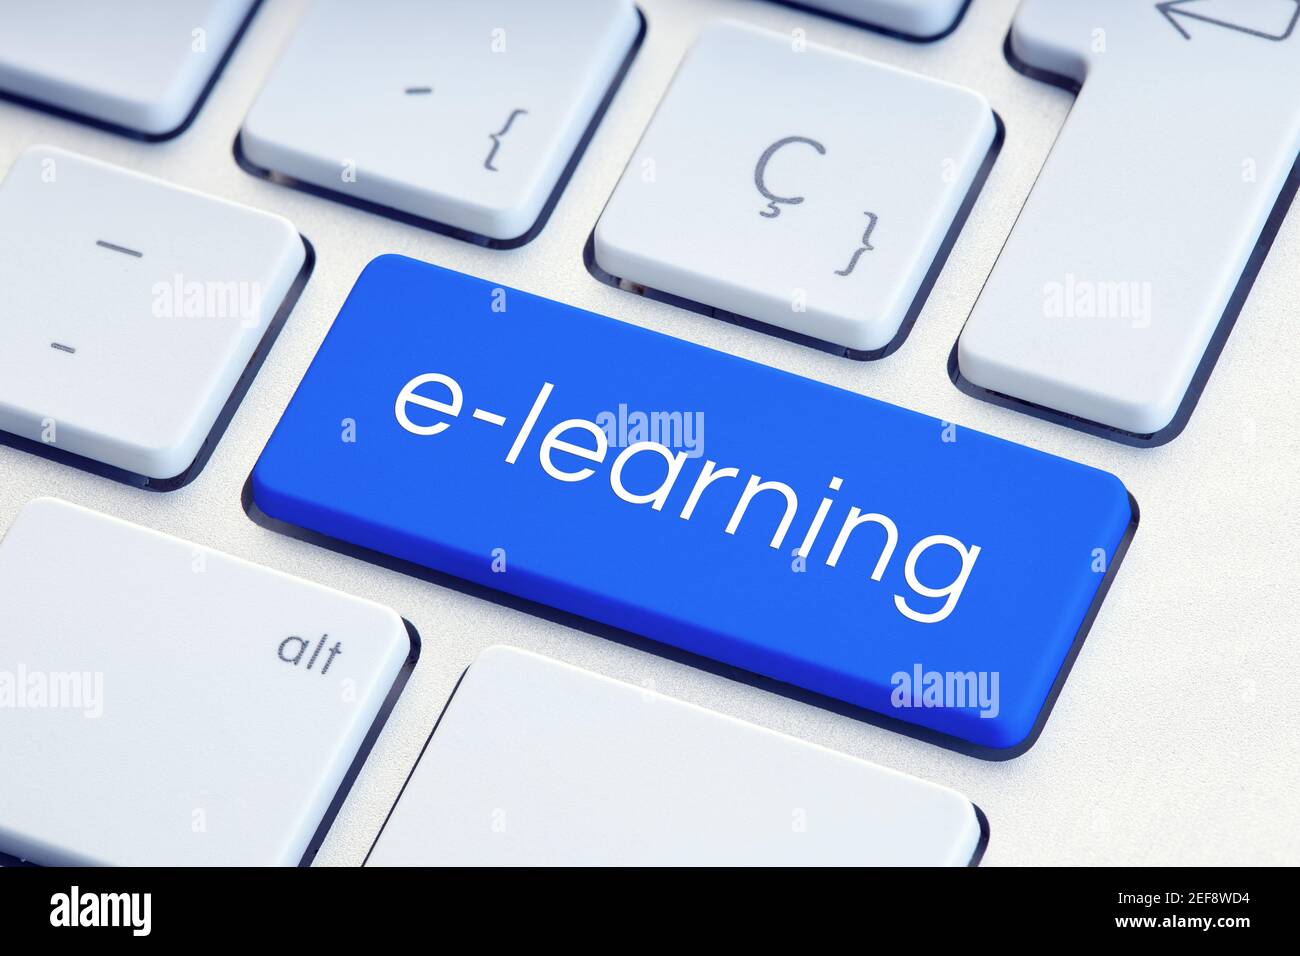 E-learning o concepto de educación en línea. Texto en la tecla de teclado del ordenador Foto de stock